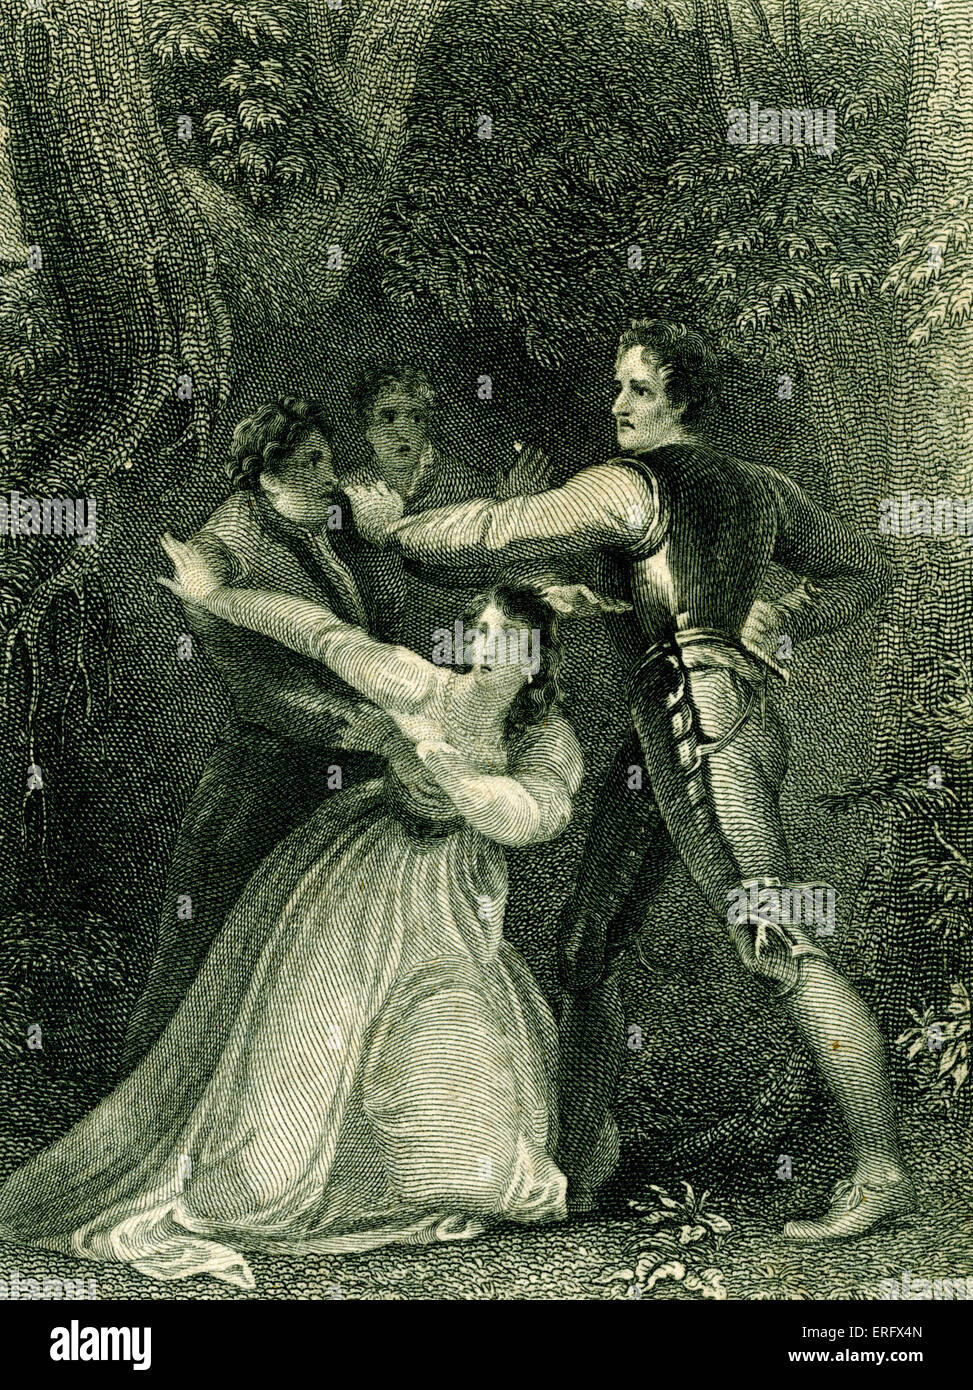 William Shakespeare - due signori di Verona - commedia. Nei boschi. Dipinto di Stothard, incisione di Rogers. Foto Stock